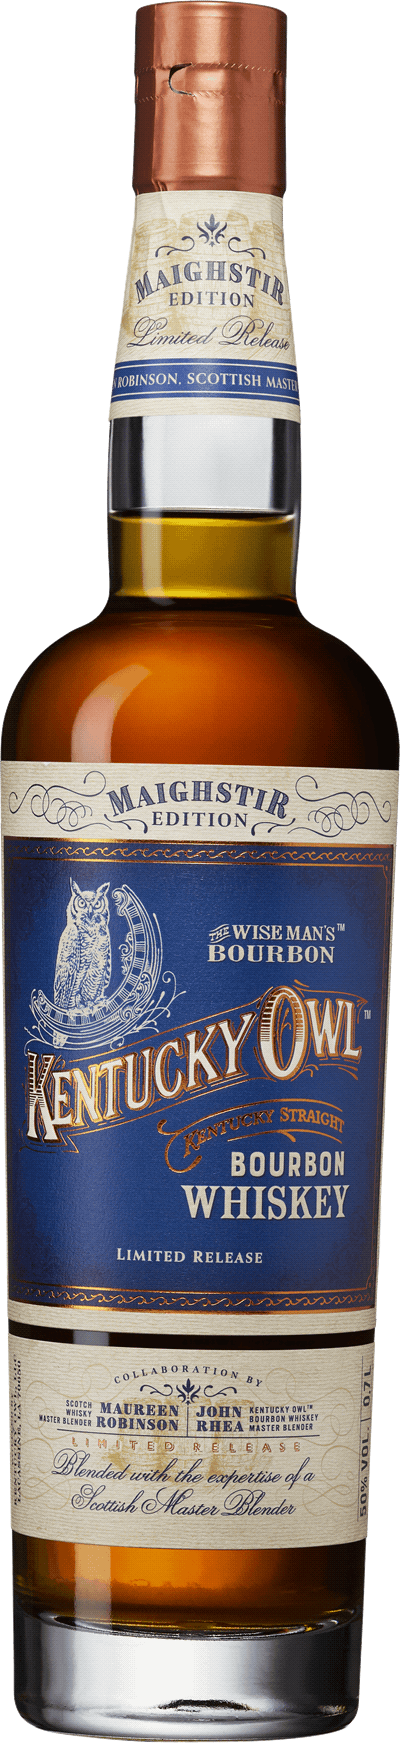 Kentucky Owl Maighstir Edition